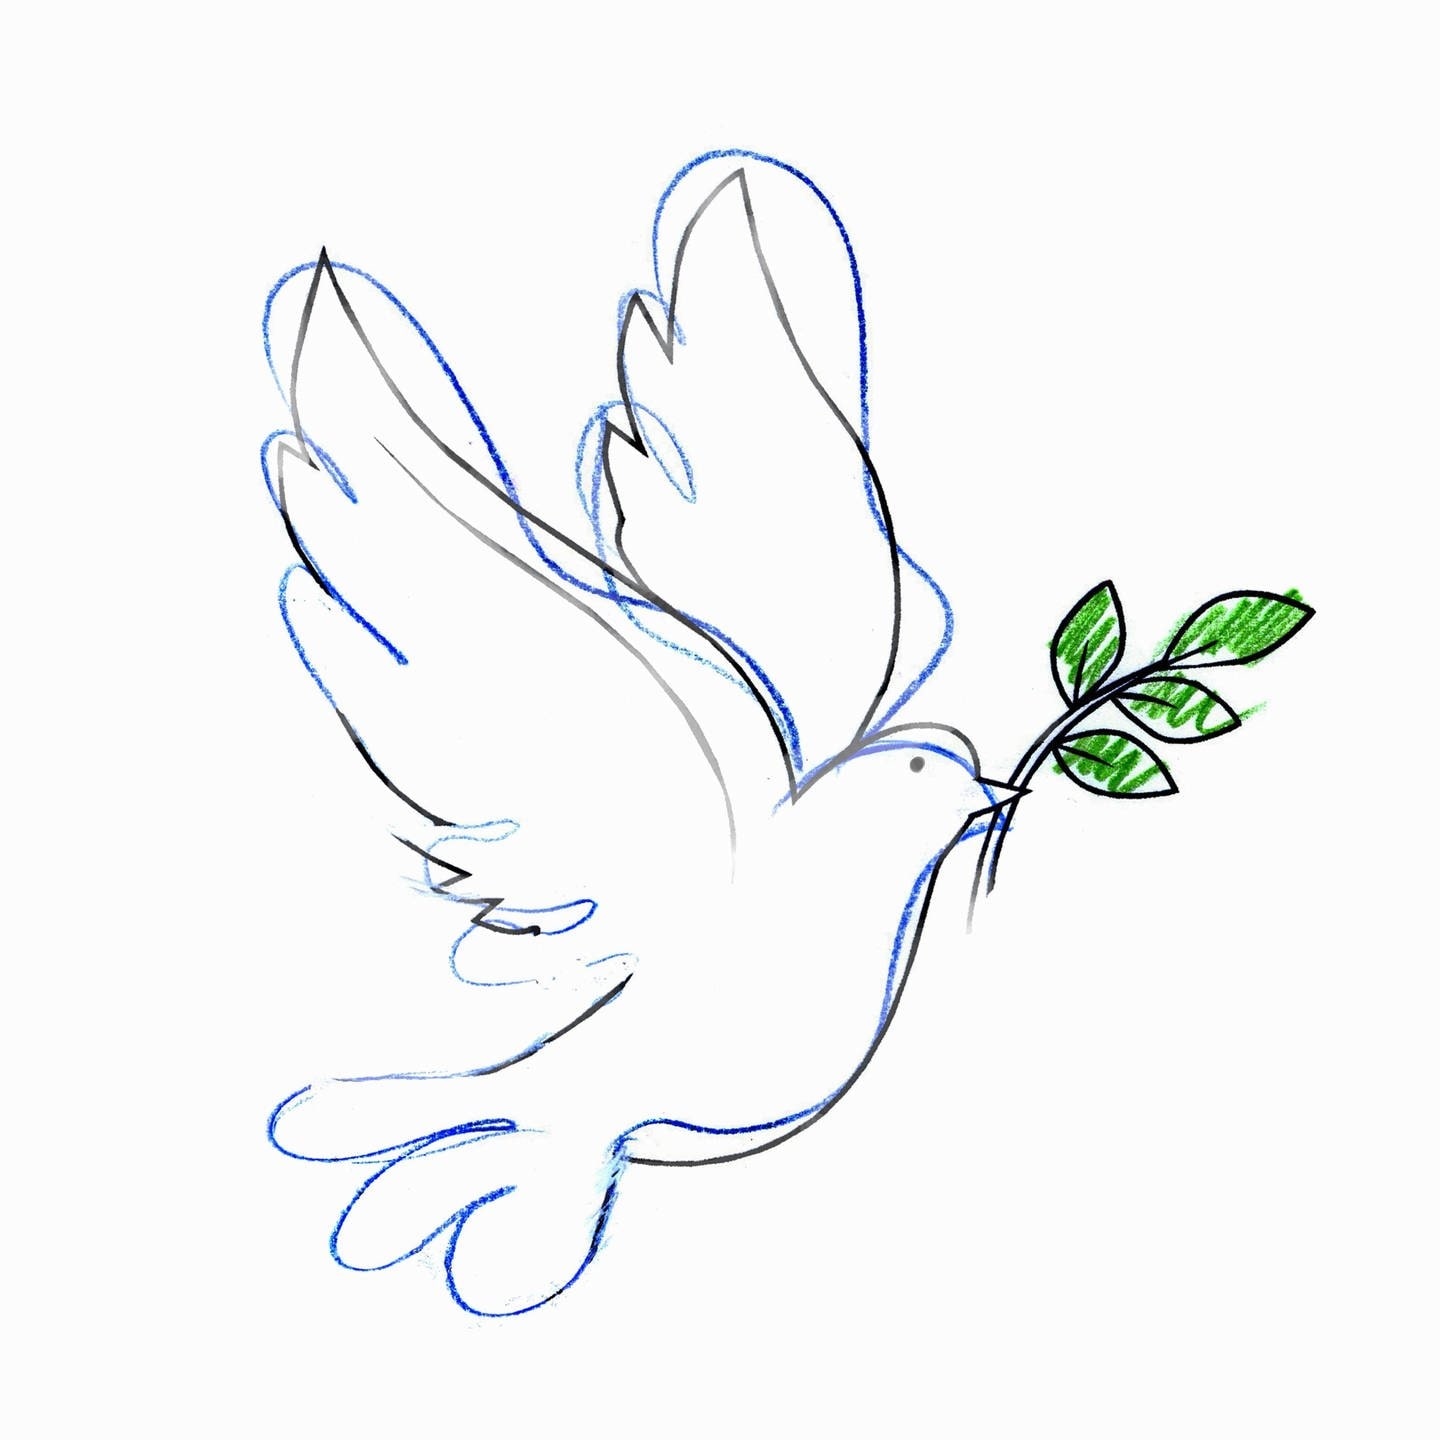 Friedenszeichen – Wikipedia